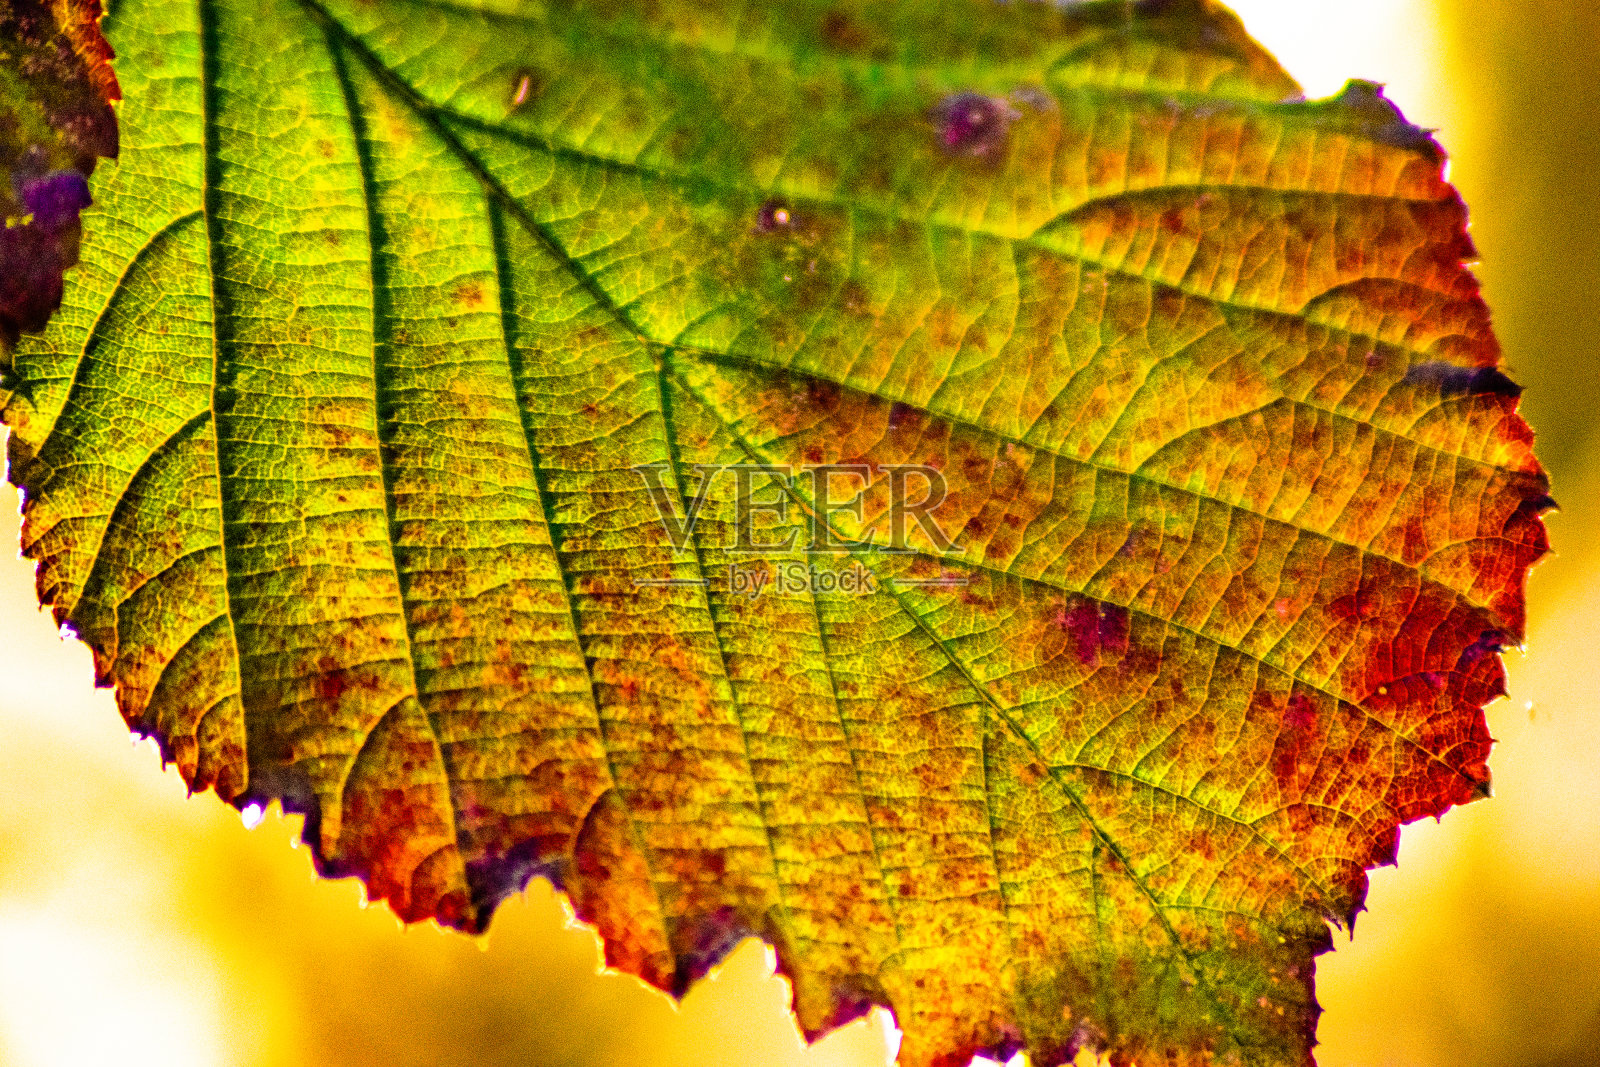 这是一个带有光影的秋叶结构的特写照片摄影图片